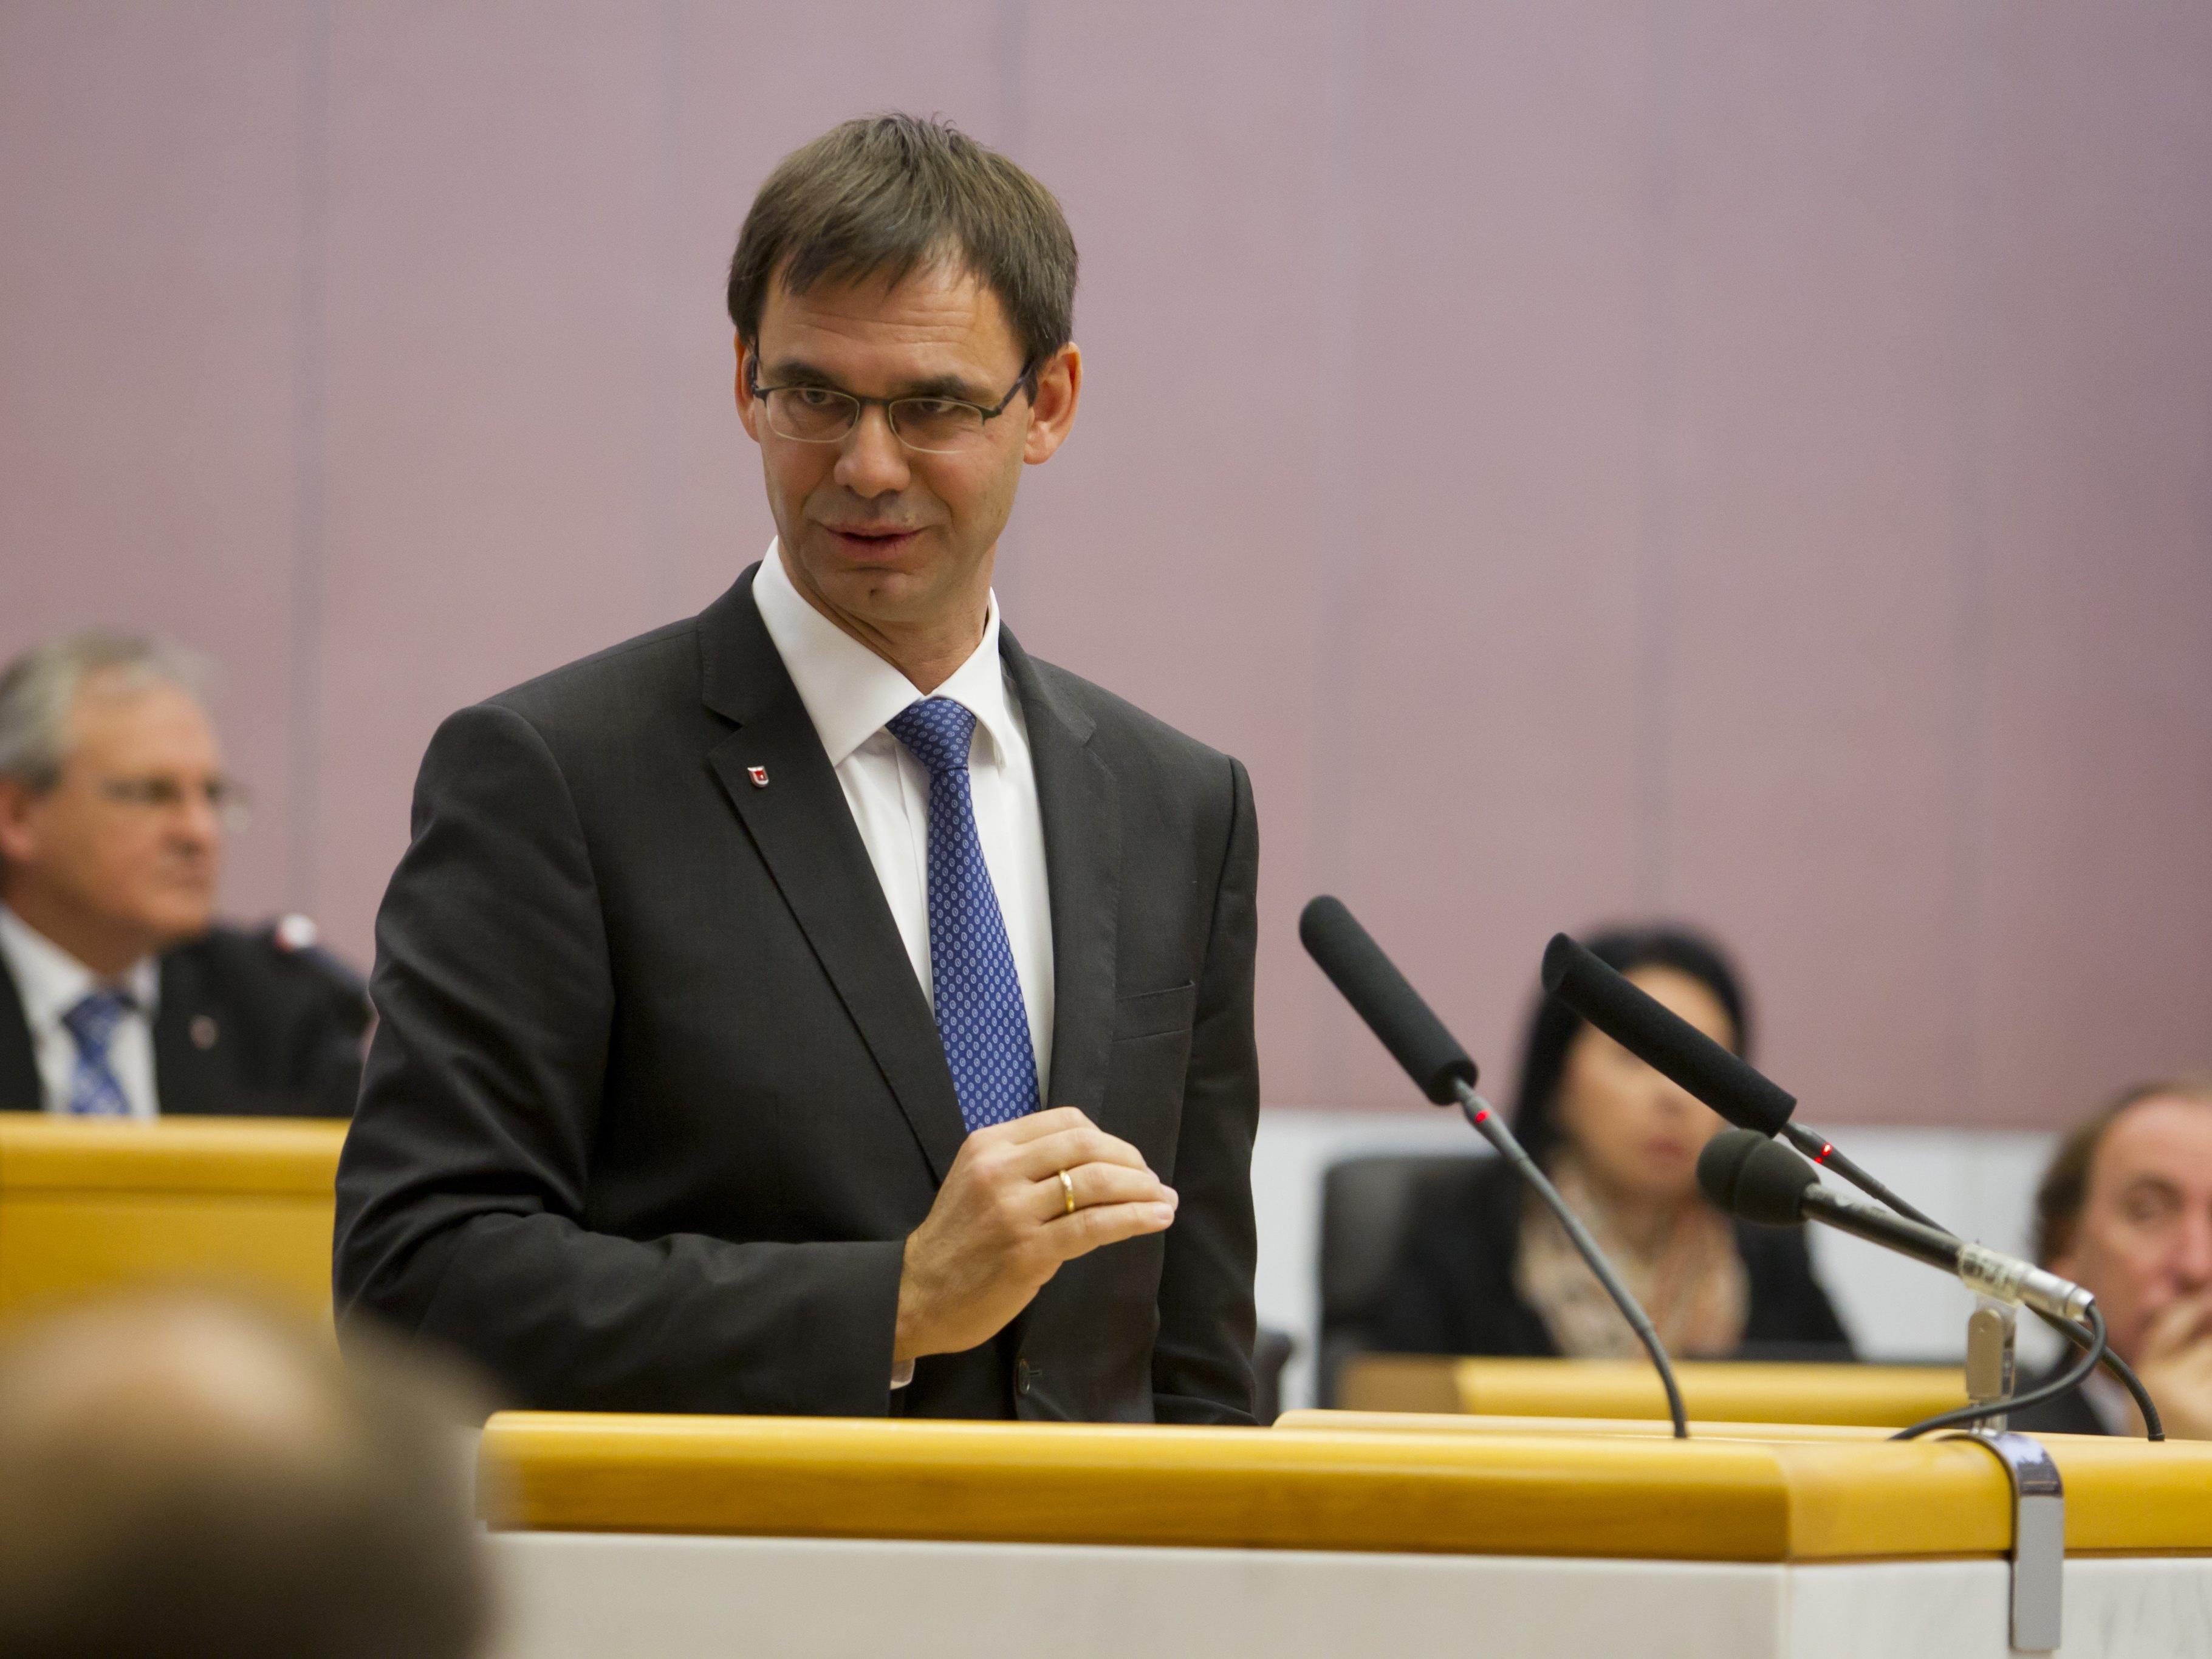 Markus Wallner unterstützt den Kurs von Parteichef Mitterlehner, der sich deutlicher von der FPÖ abgrenzen will.